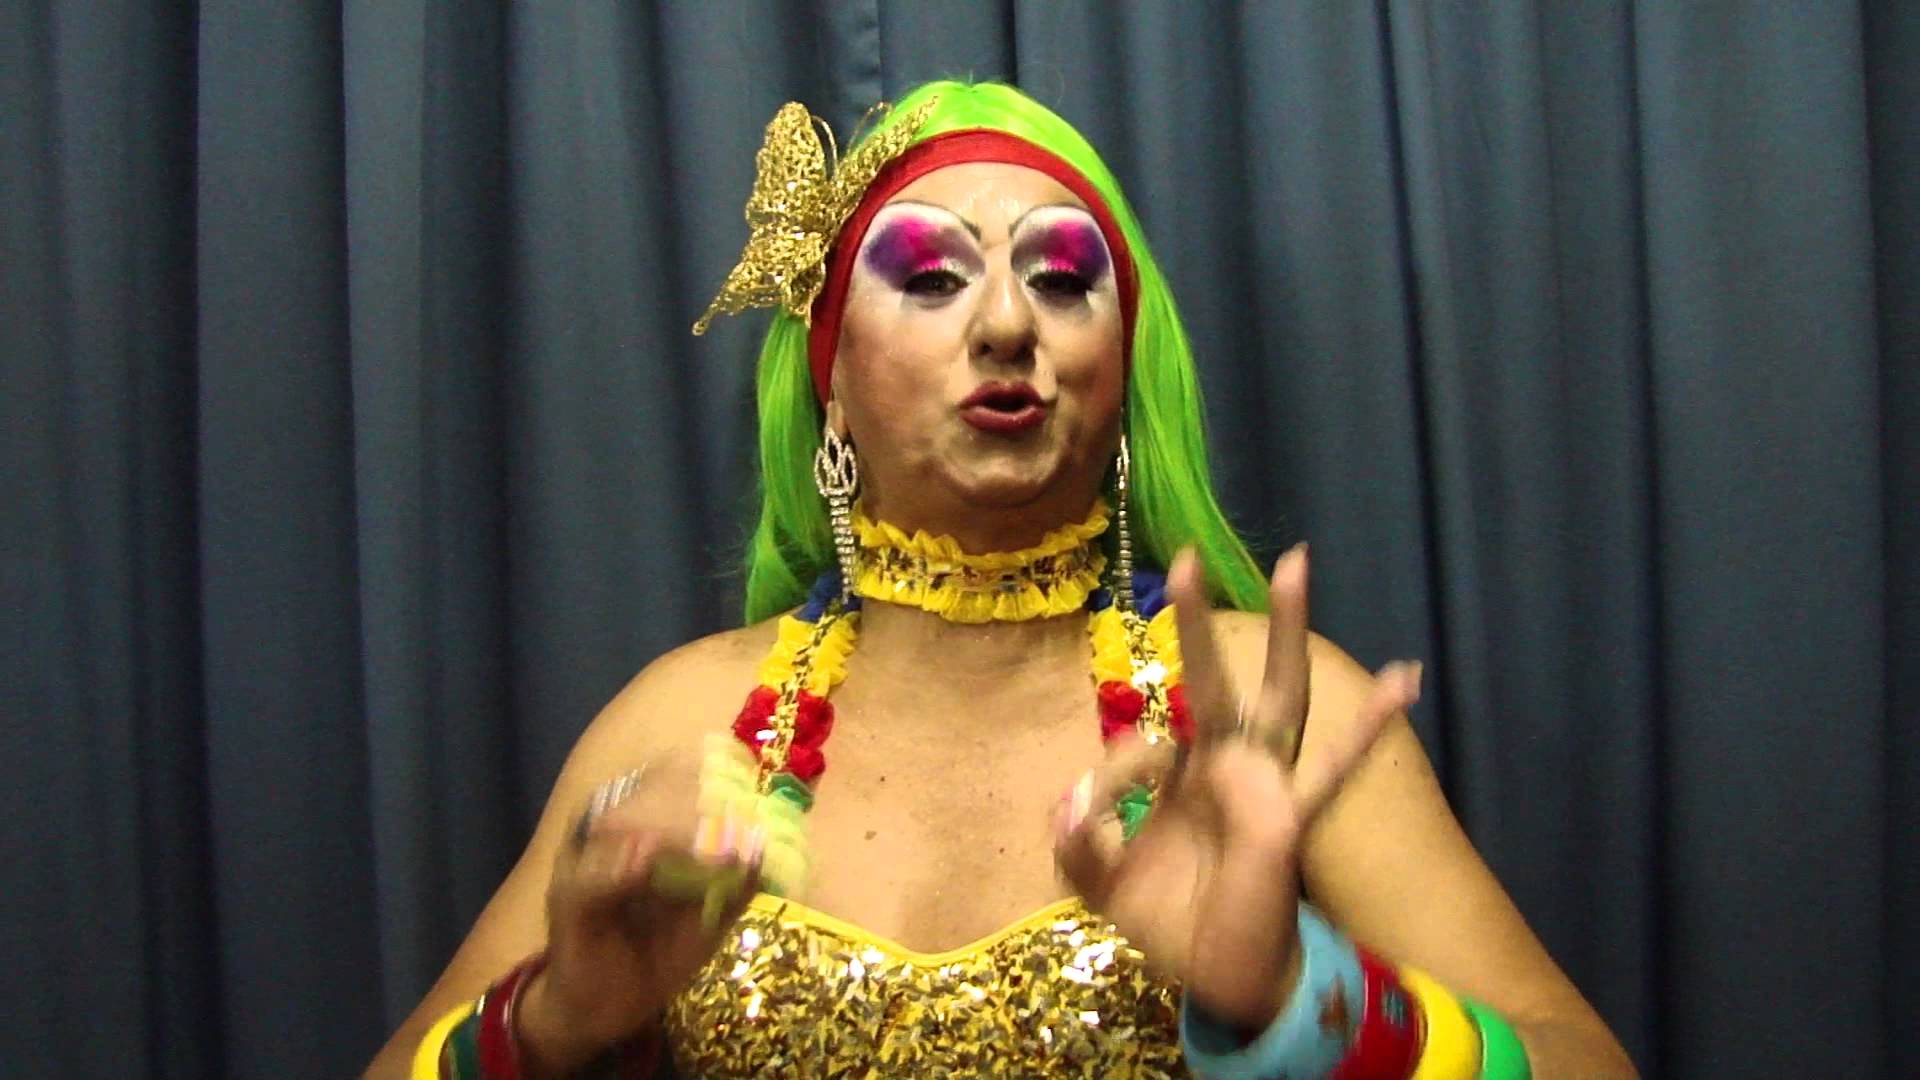 Ator fez a personagem Biuzinha Priqui do grupo de teatro Pastoril Profano (Foto: Reprodução/YouTube/Nordeste1)